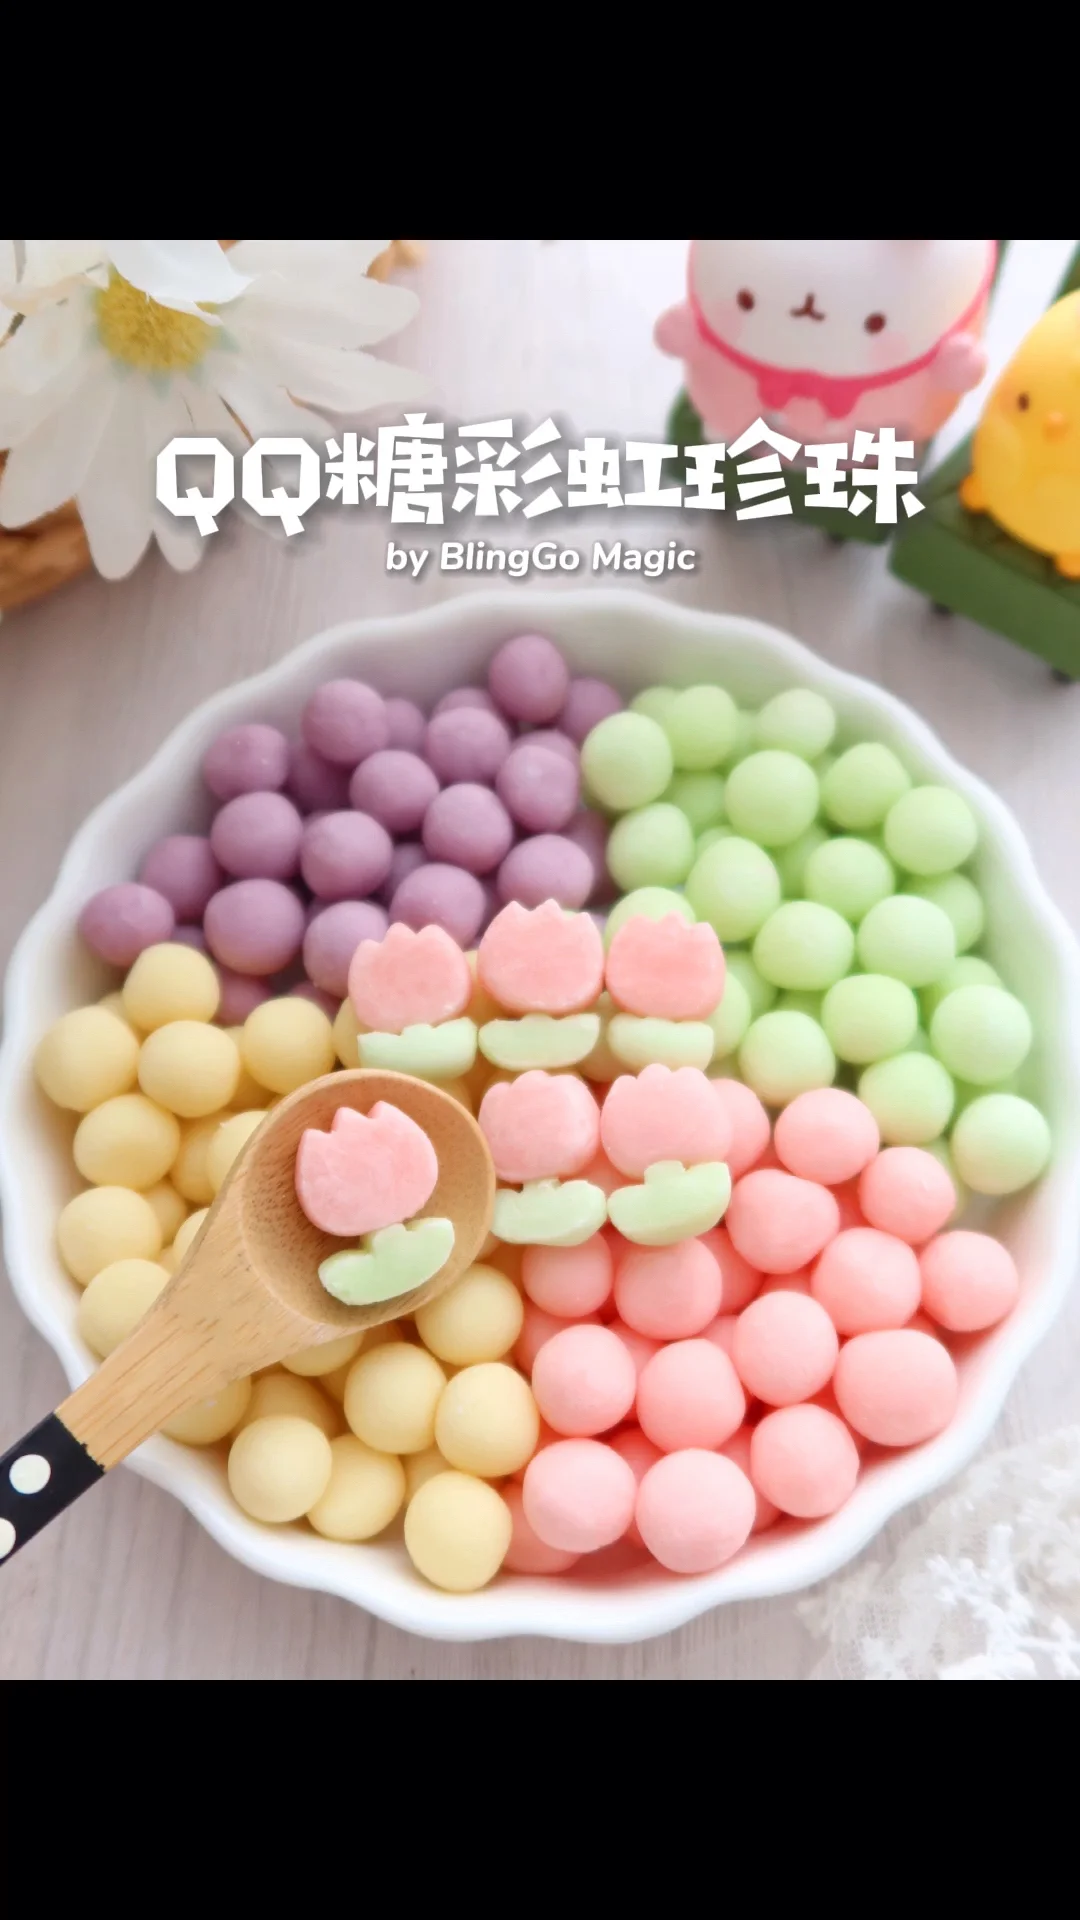 一包QQ糖就能做彩虹珍珠🌈软糯Q弹颜值爆表